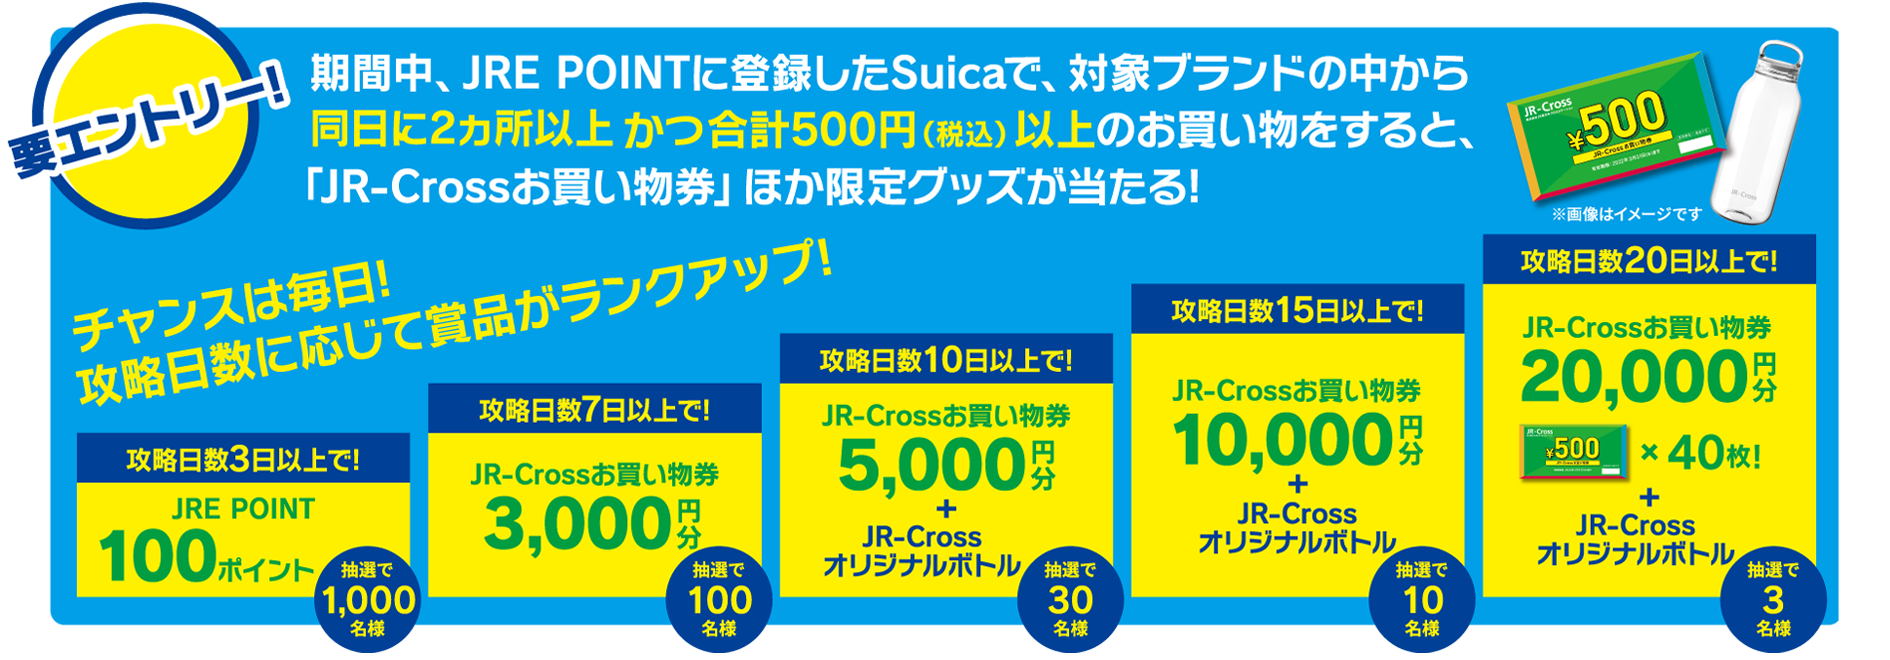 필수 항목! 기간 동안 JRE POINT 가입 한 Suica에서 대상 브랜드 중 같은 날에 2 개 이상이고 총 500 엔 (세금 포함) 이상의 쇼핑을하면 JR-Cross 쇼핑 권」외 한정 상품이 맞는다! 기회는 매일! 공략 일수에 따라 상품이 랭크 업!